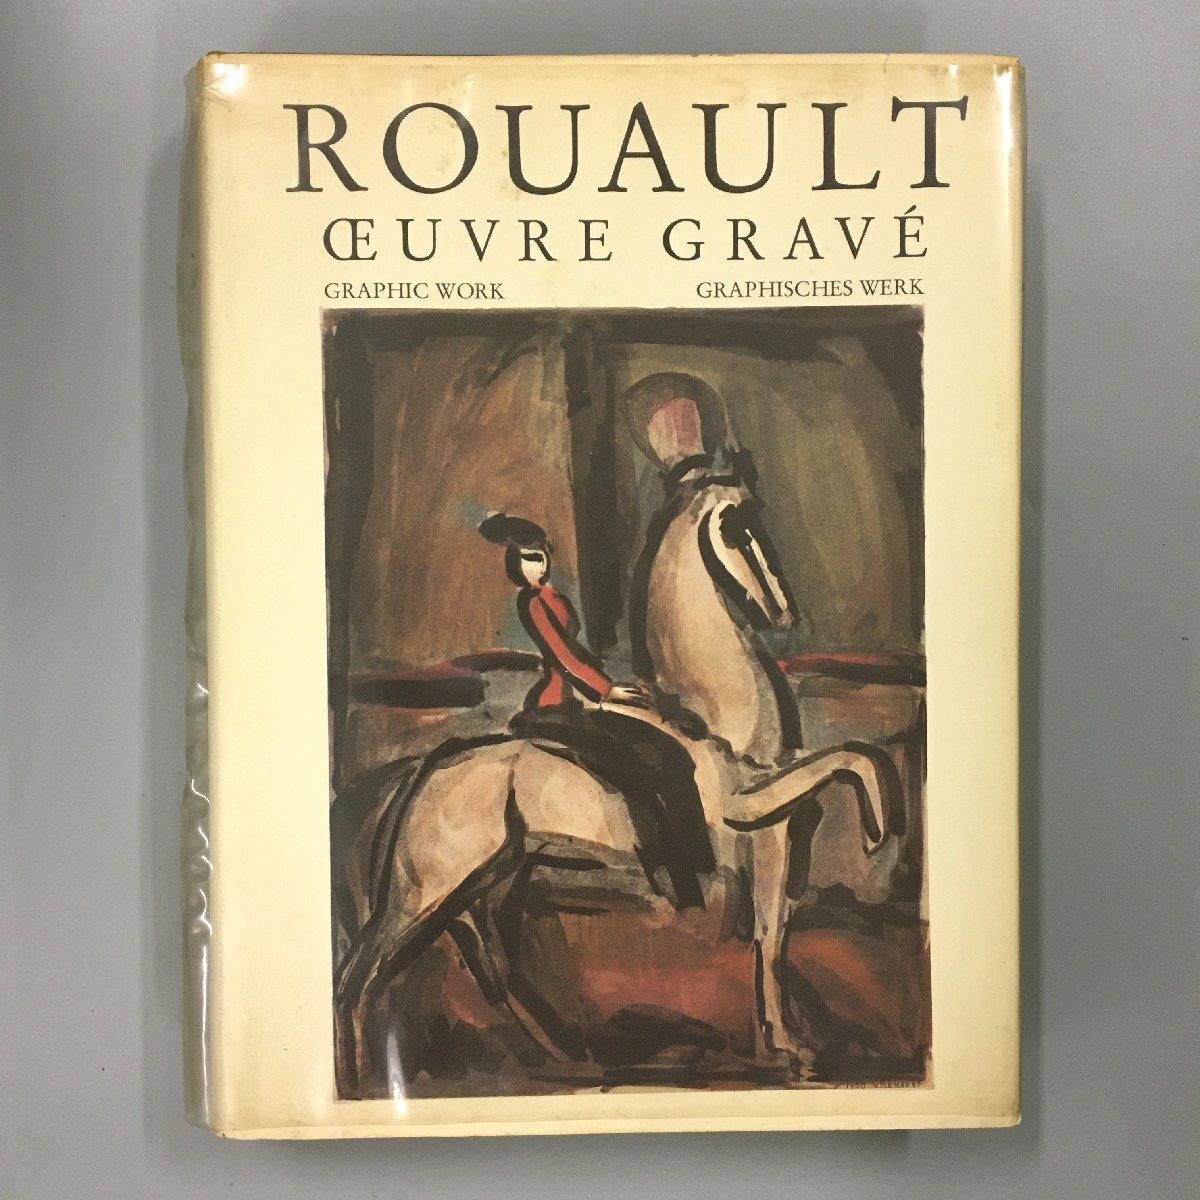 대형 도서 루오 인쇄 카탈로그 Raisonné ROAUULT: Oeuvre Grave F. Chapon & I. Rouault 1978 1 권만 양서 중고 도서 화집 작품집, 그림, 그림책, 수집, 완전한 작품, 카탈로그 레조네